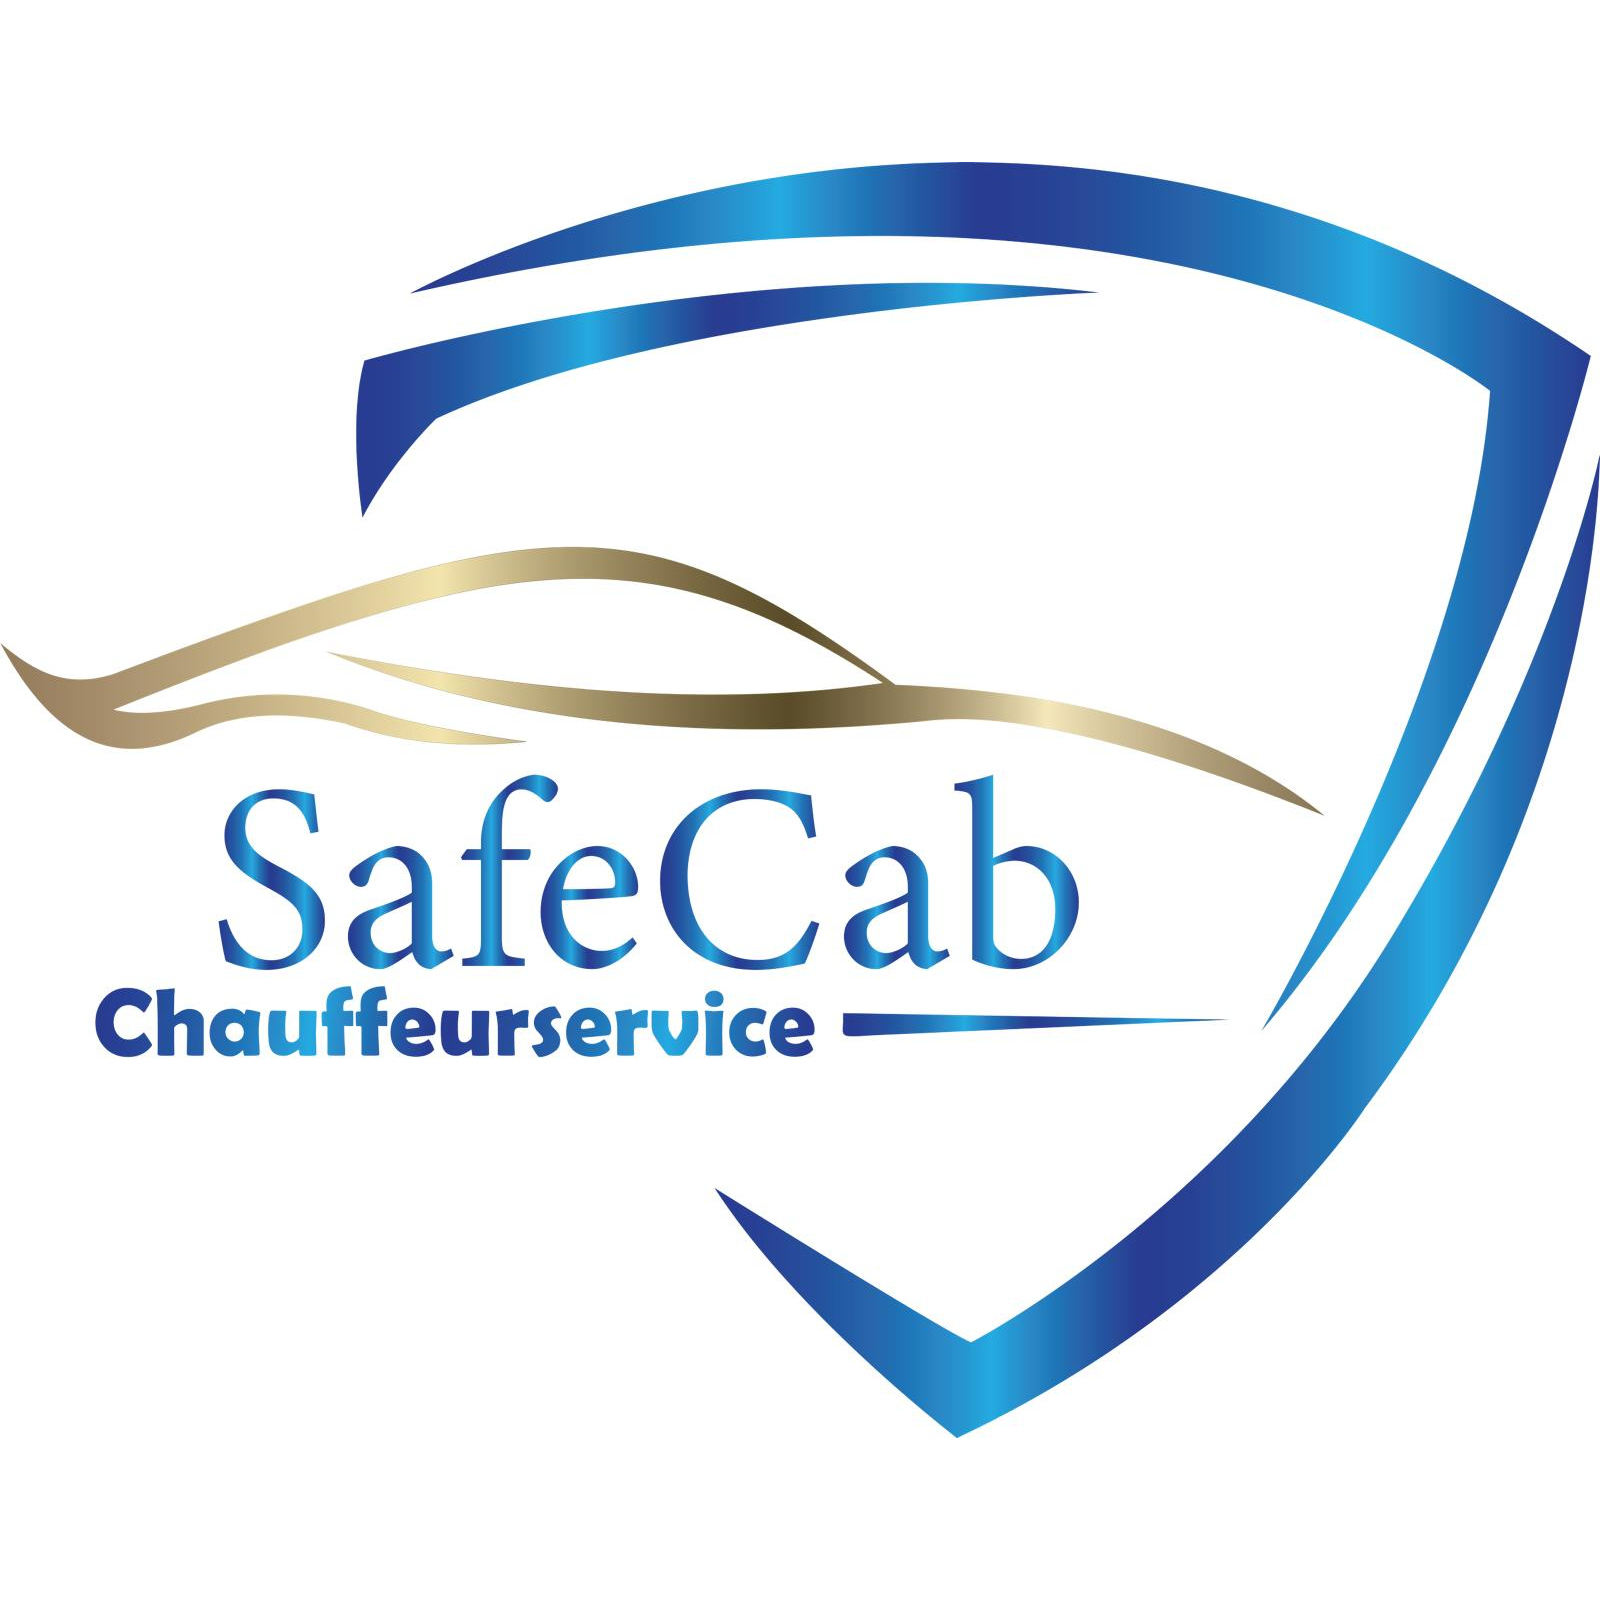 SafeCab Chauffeurservice in Weiterstadt - Logo